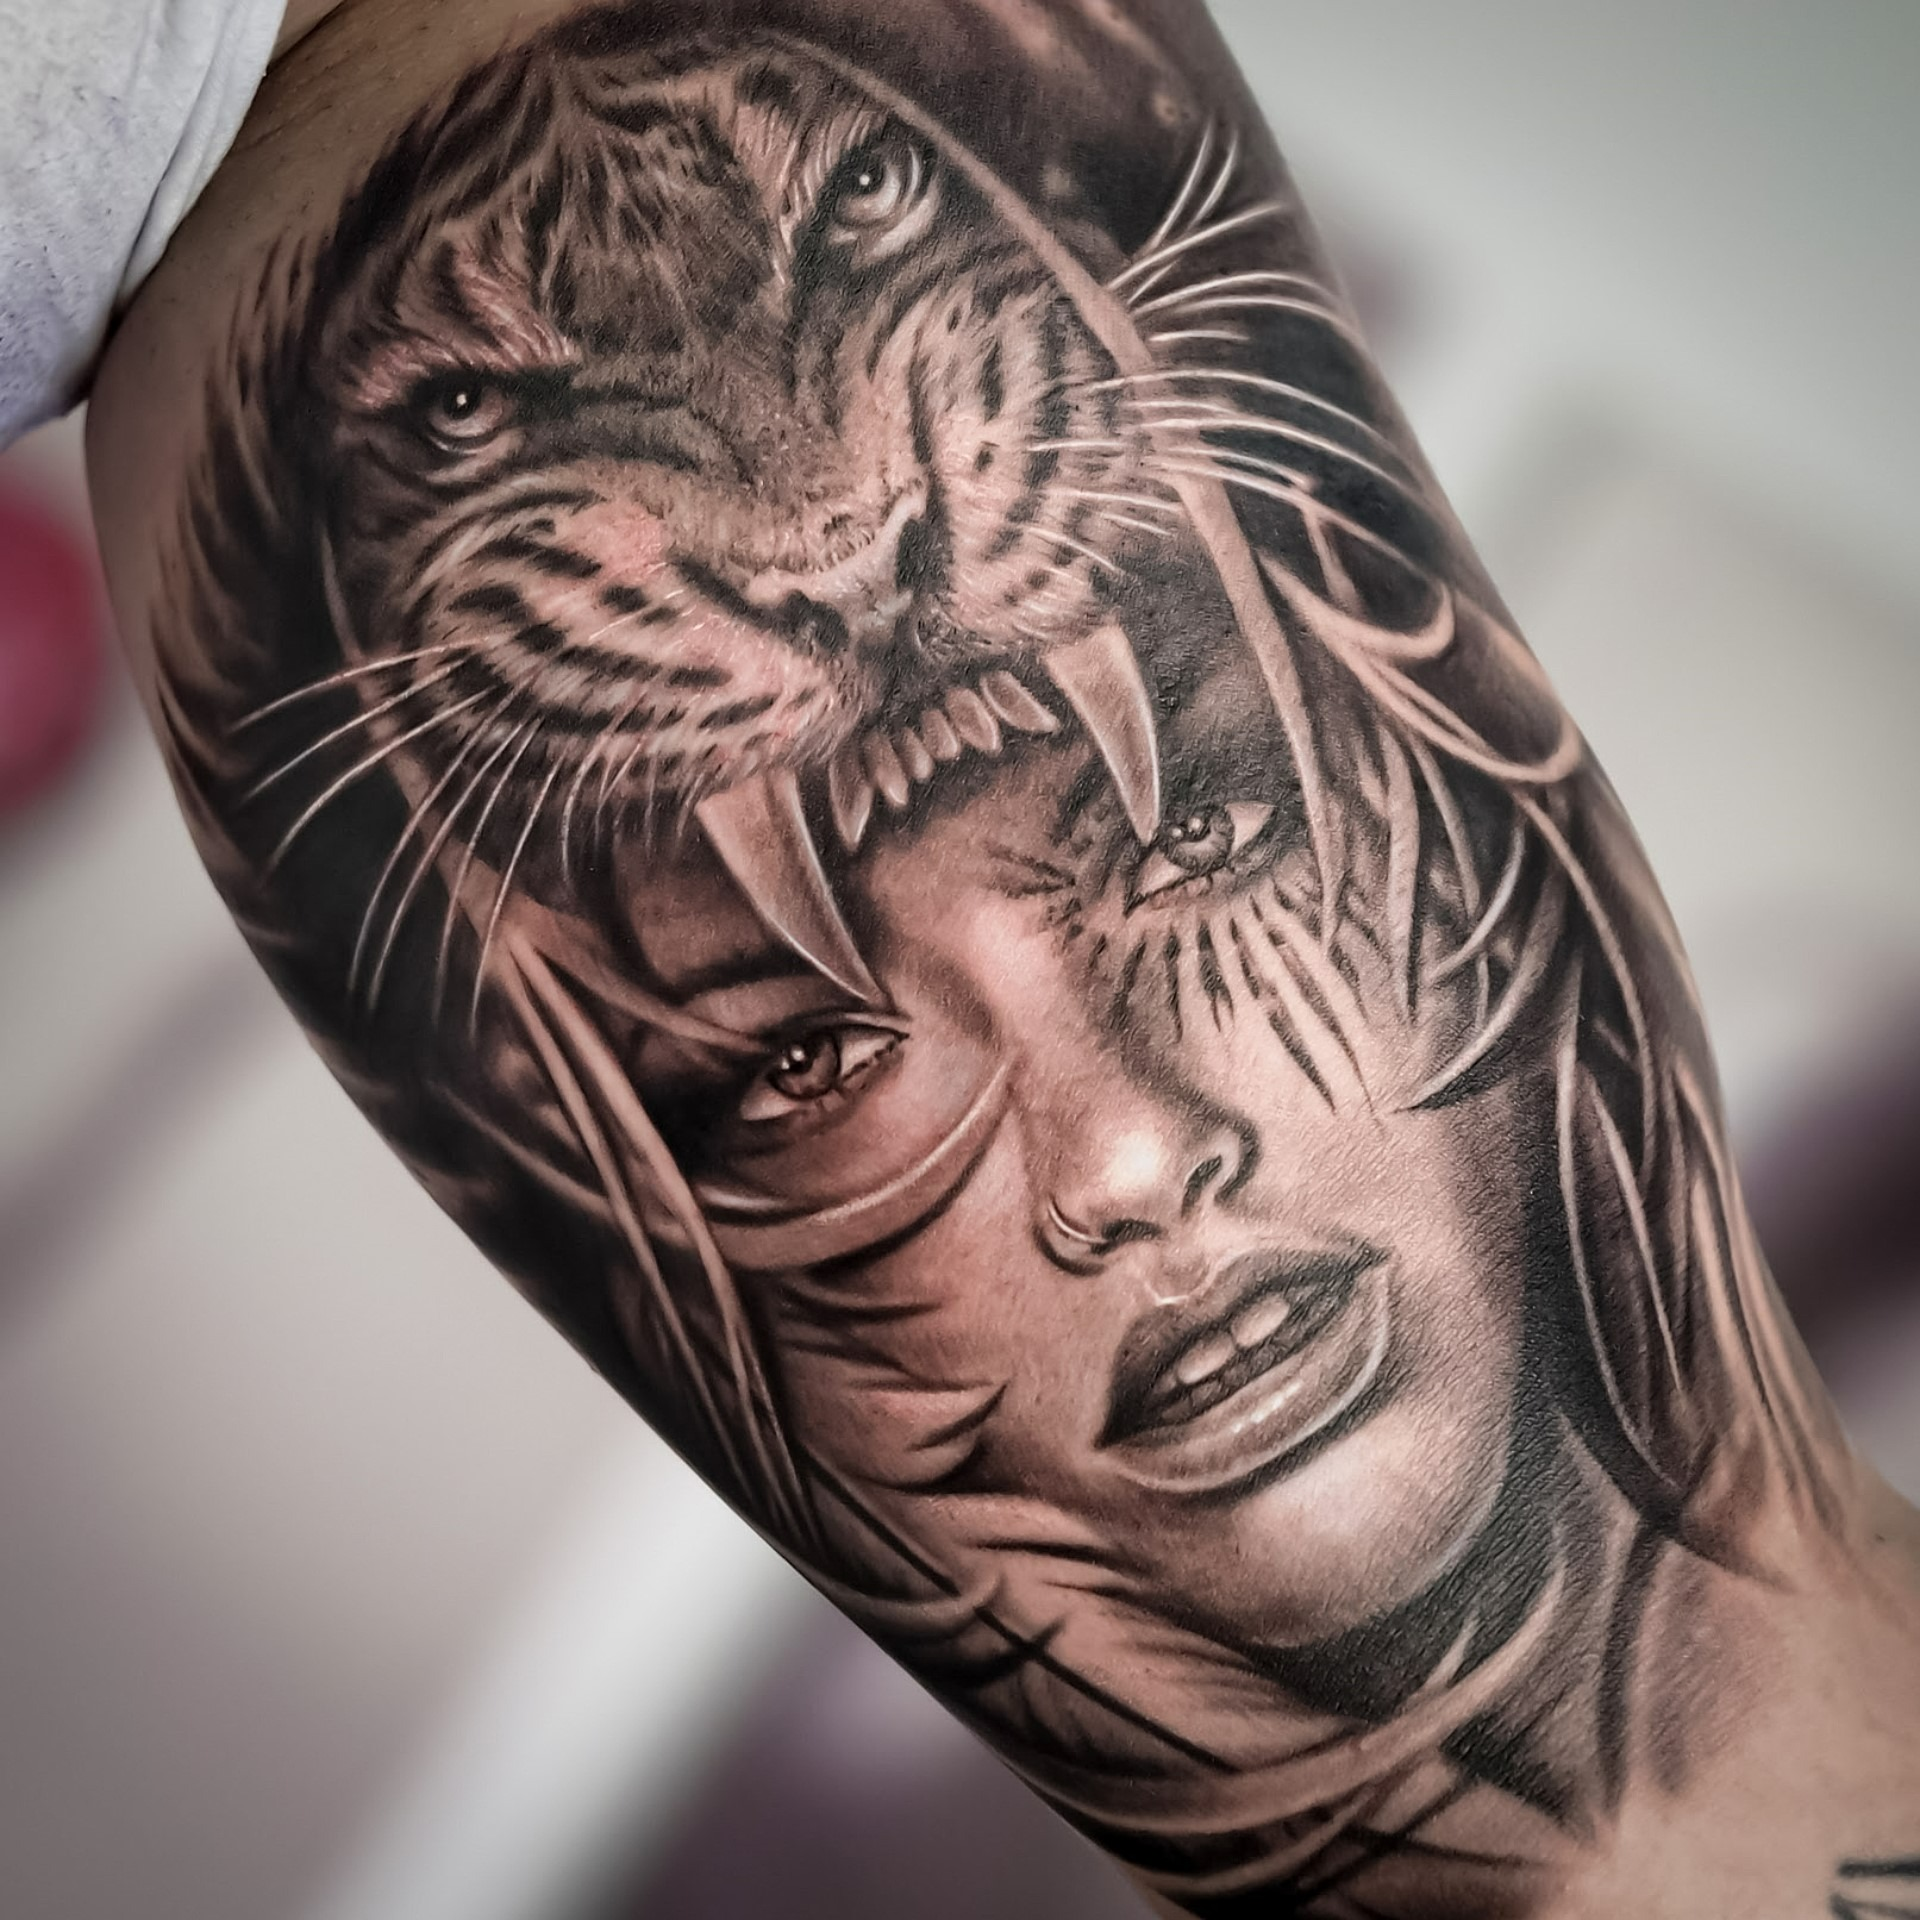 Tatuaż realistyczny kobieta i tygrys